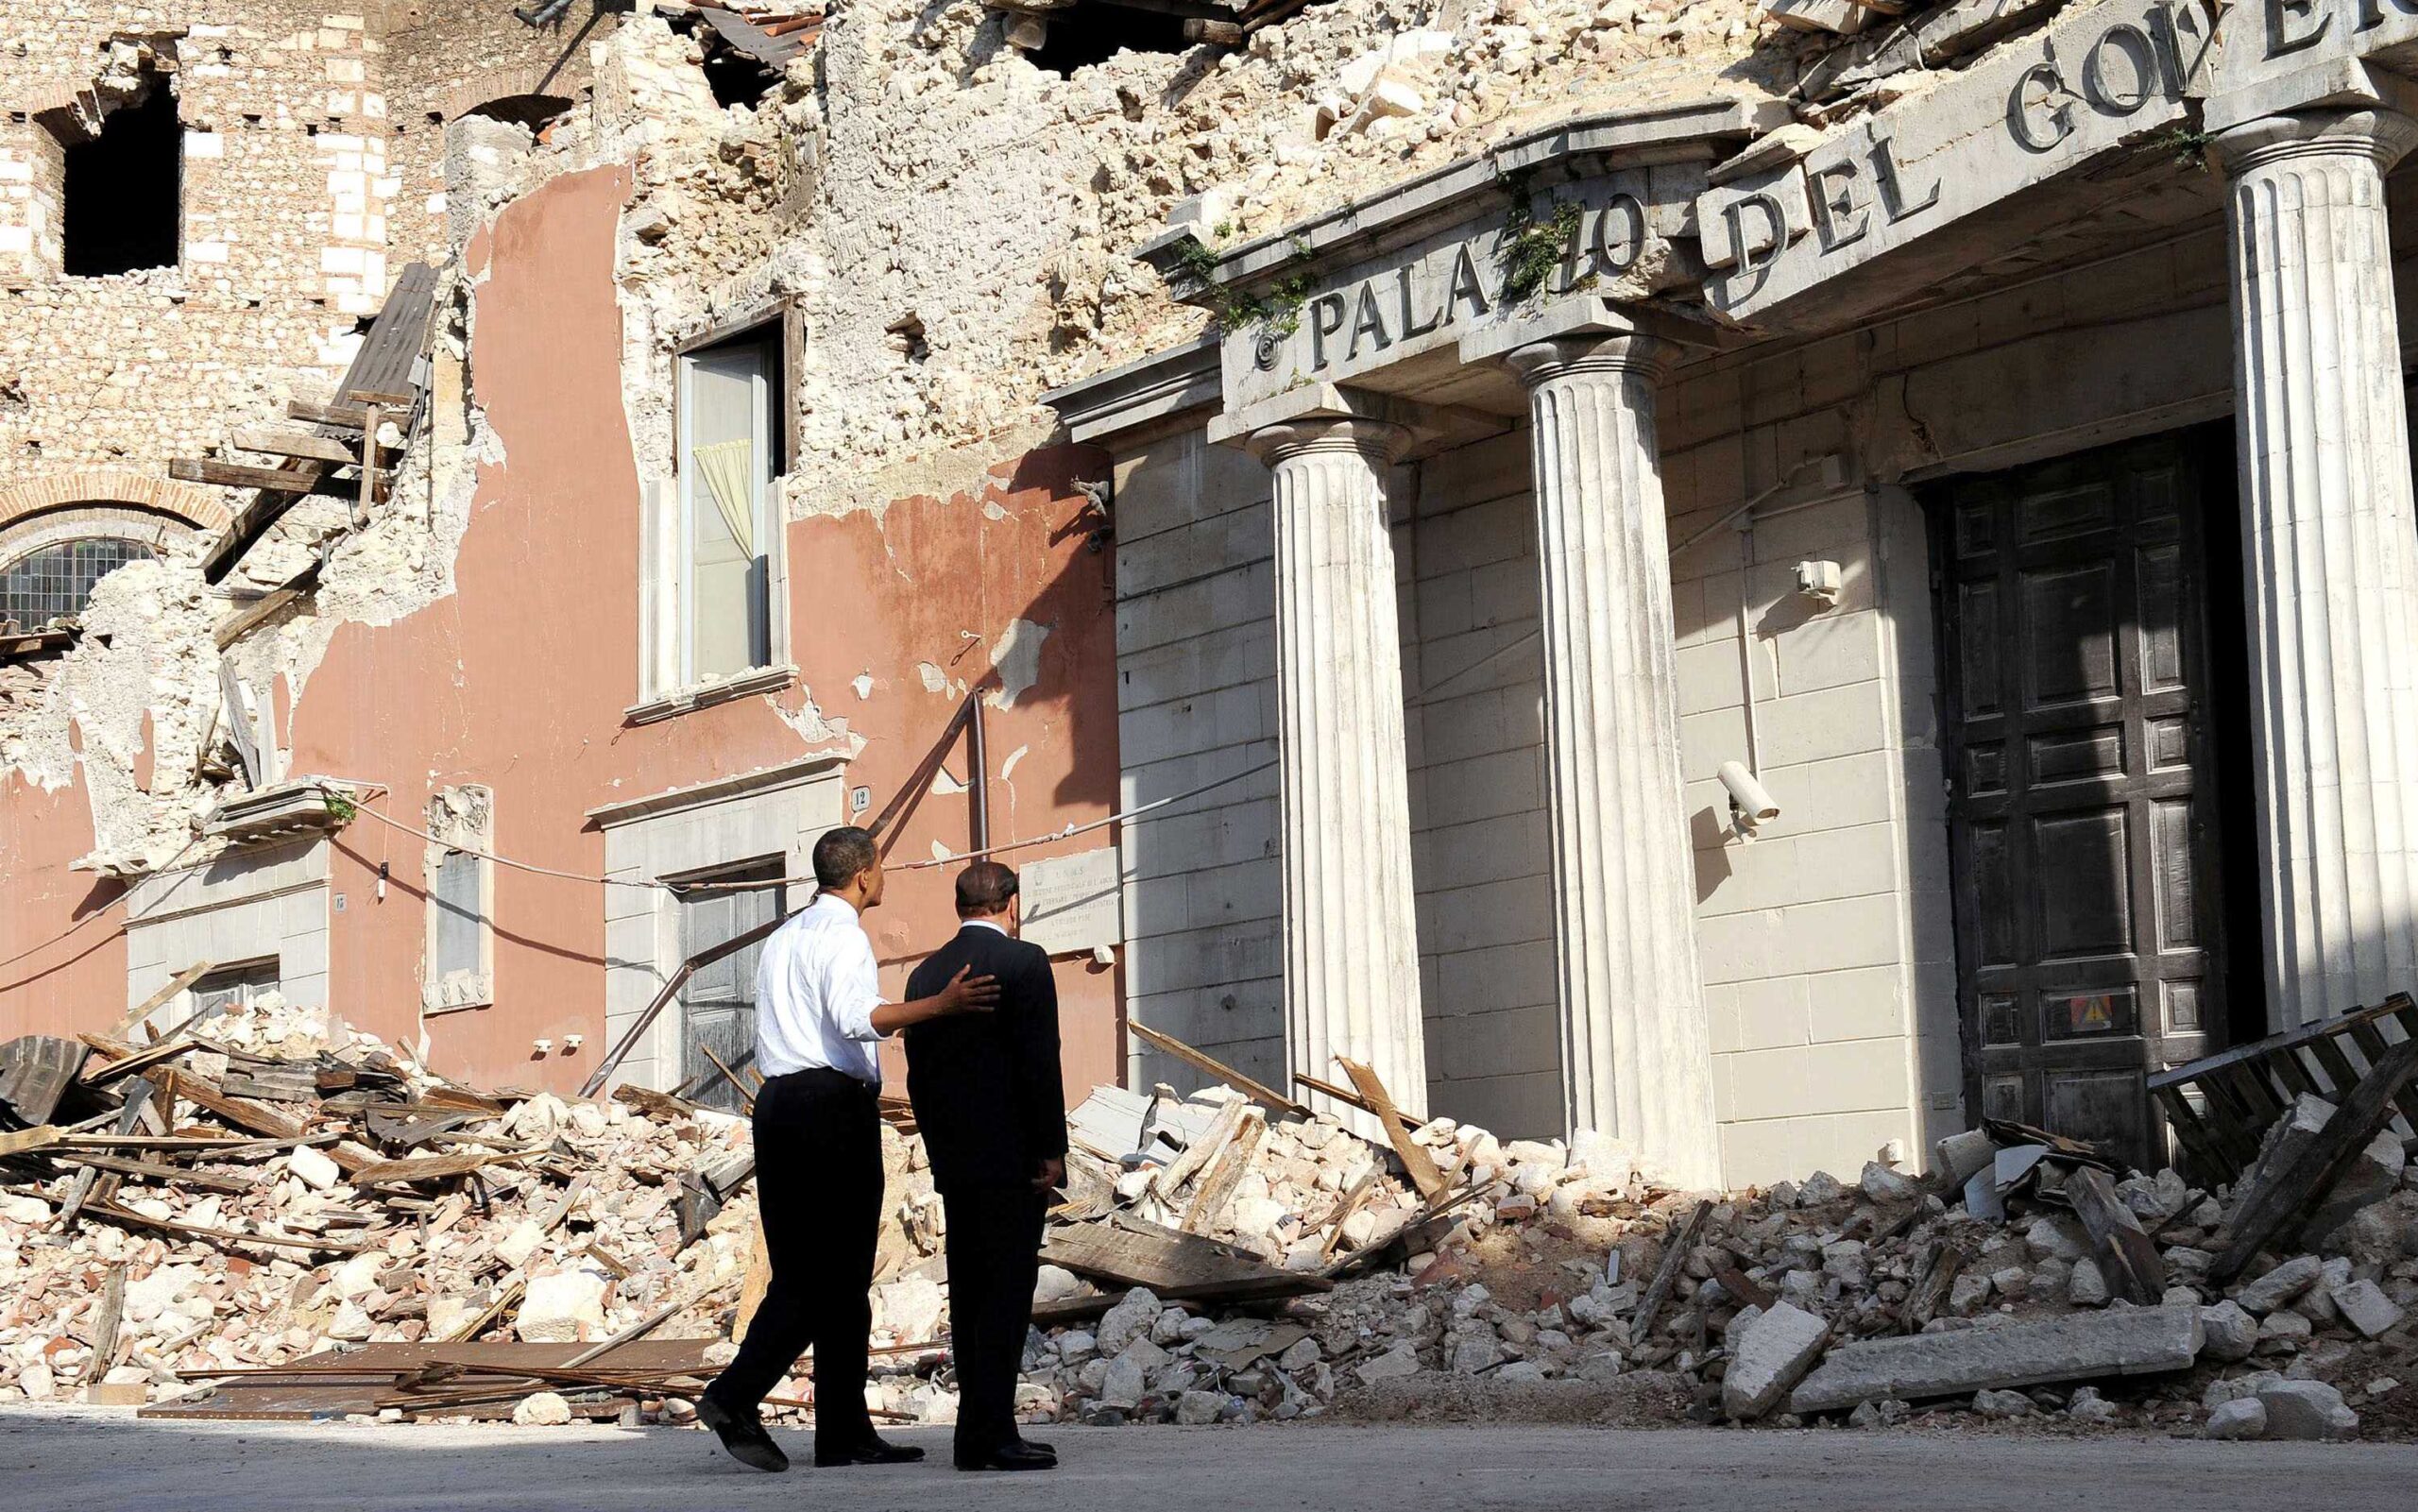 El presidente estadounidense Barack Obama y el primer ministro italiano Silvio Berlusconi observan un edificio gubernamental dañado y destruido por un terremoto en abril de 2009 en el centro de L'Aquila, durante la cumbre del Grupo de los Ocho (G8). L'Aquila, Italia, 8 de julio de 2009. © BRAMBATTI/CHINE NOUVELLE/SIPA